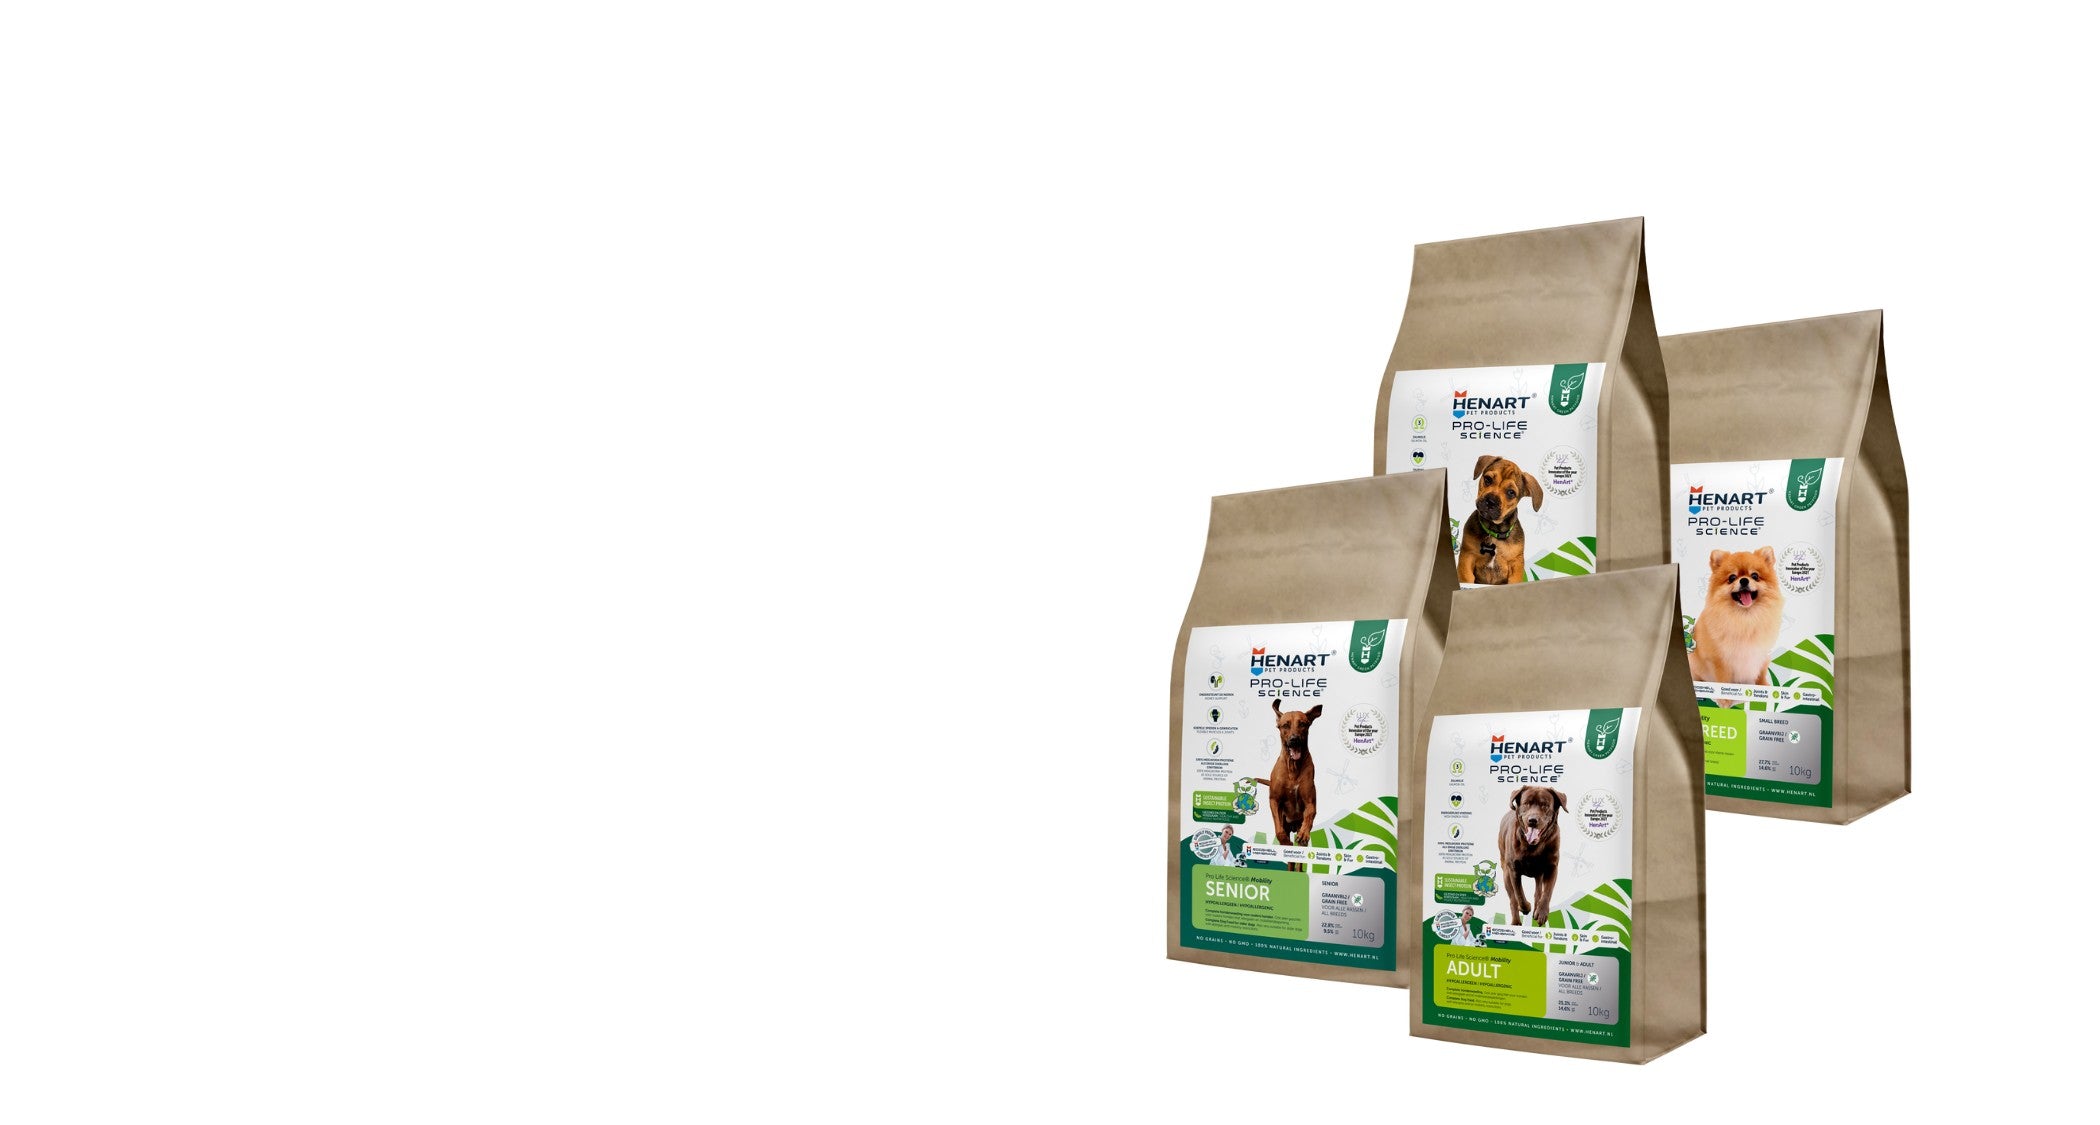 Zu sehen sind vier Packungen des HenArt Insektenfutters für unterschiedliche Hunderassen.